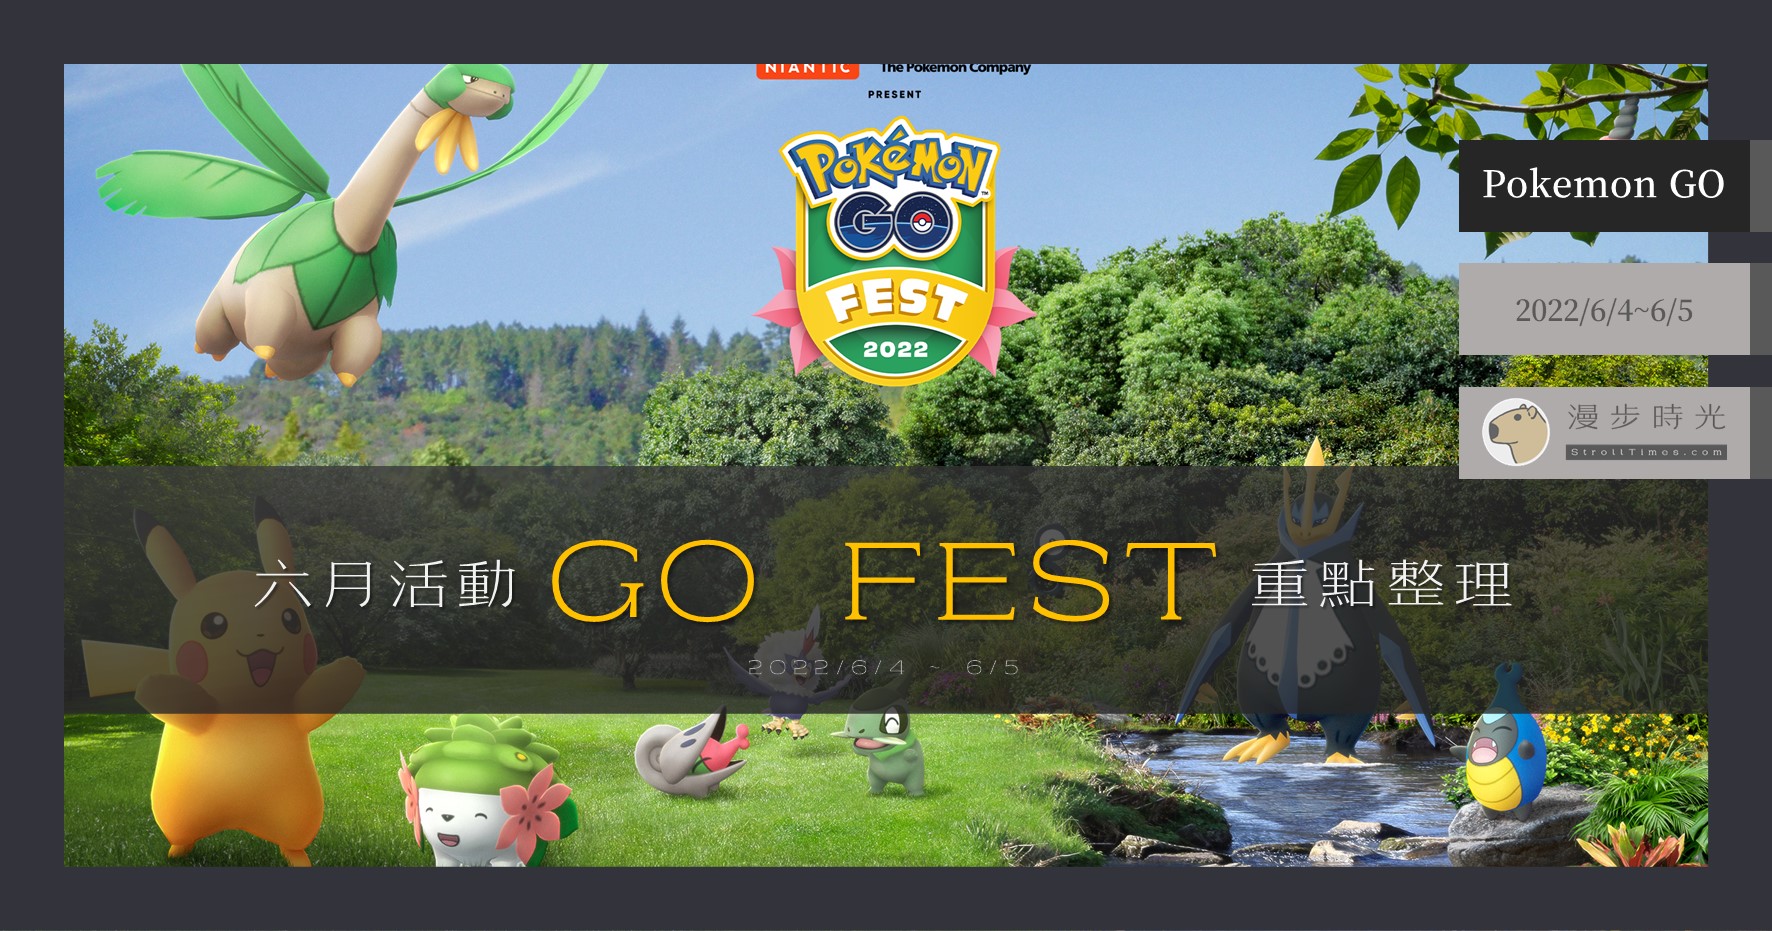 【Pokemon GO】2022年6月「GO FEST 2022」：謝米來了！四大棲地寶可夢輪流出沒，未知圖騰、牙牙、熱帶龍必抓！ @漫步時光